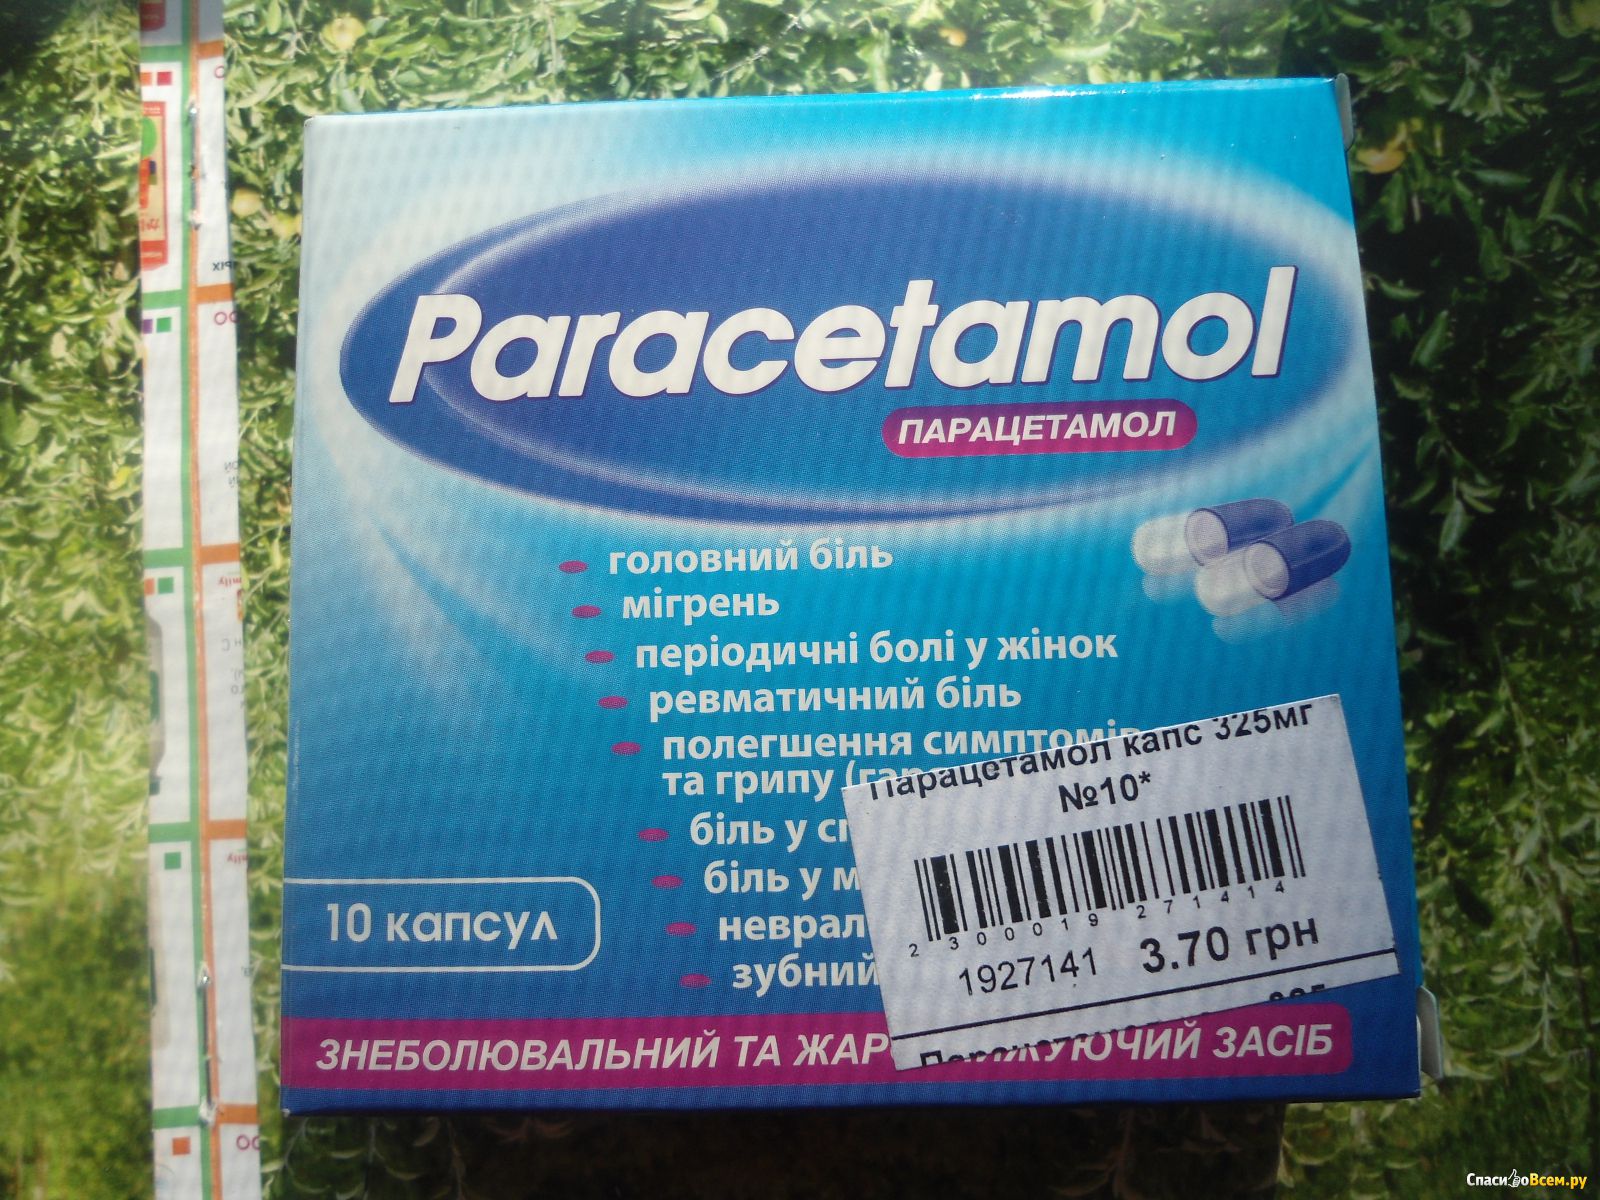 Парацетамол относится к группе